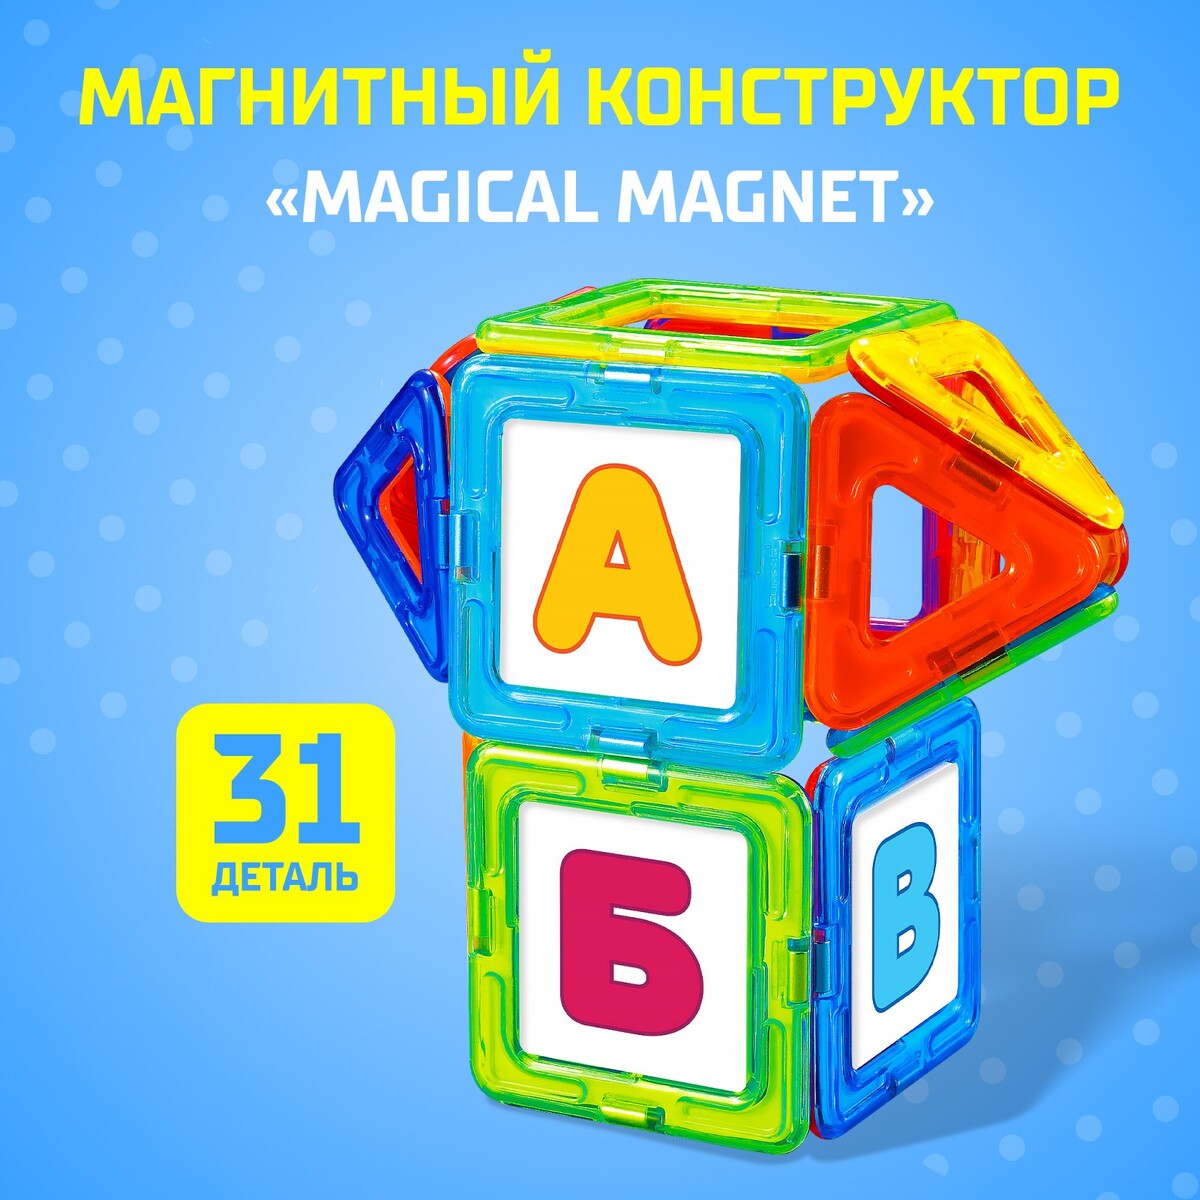 Магнитный конструктор magical magnet, 31 деталь, детали матовые конструктор магнитный замок 204 детали sima land